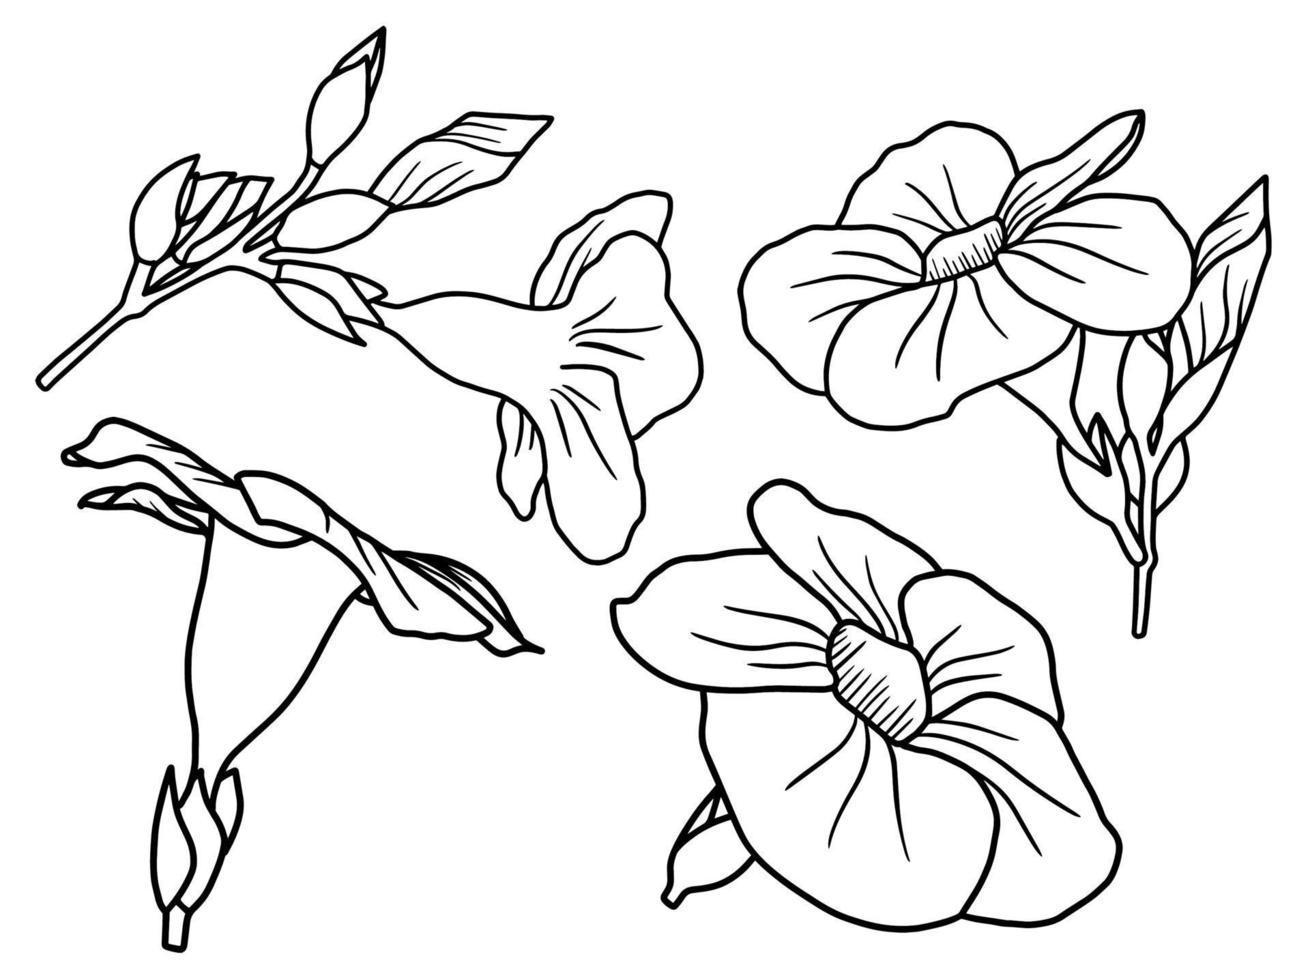 Flowers line art aarangement vector